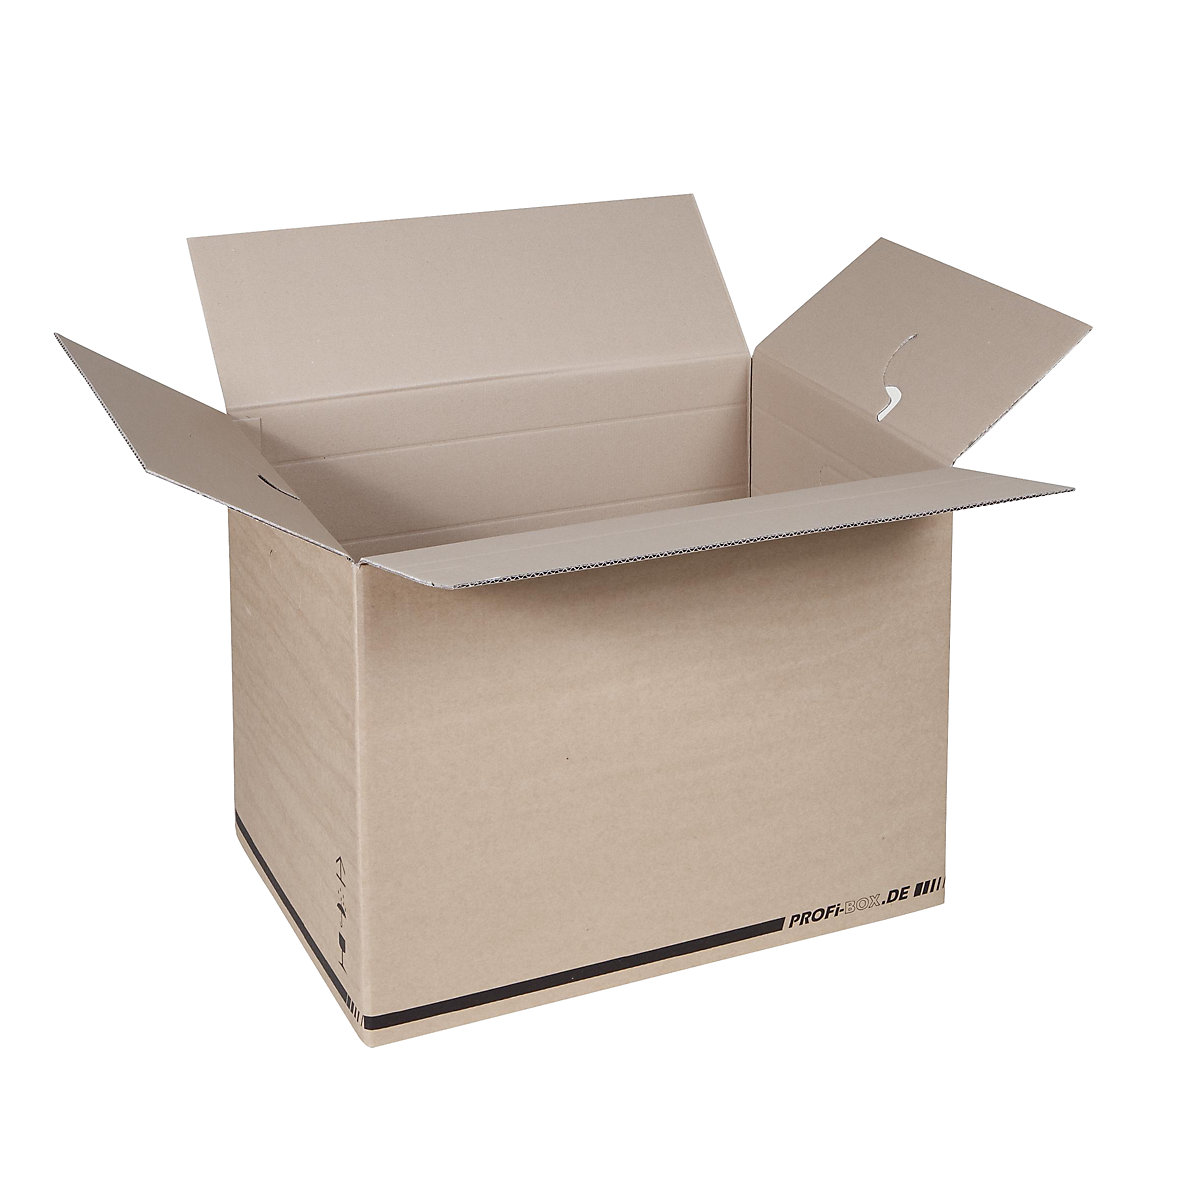 Profesionalne kutije, od 2-valnog kartona, unutarnje dimenzije 574 x 376 x 418 mm, FEFCO 0216, pak. 50 kom.-7